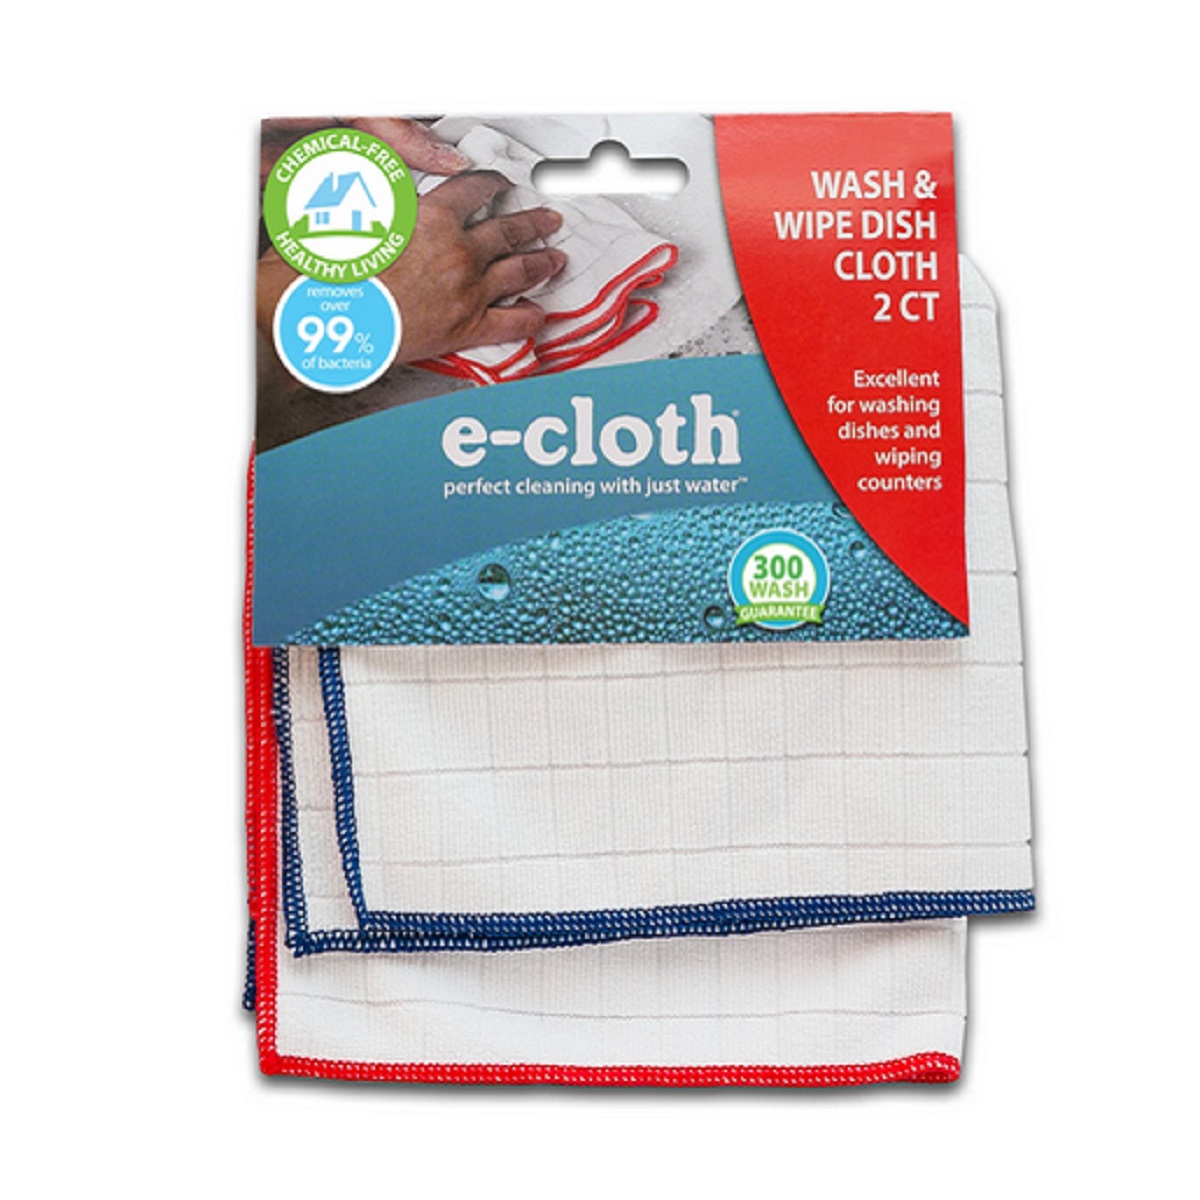 Wash & Wipe Dish Cloth (Blue) - Set of 2, E-Cloth